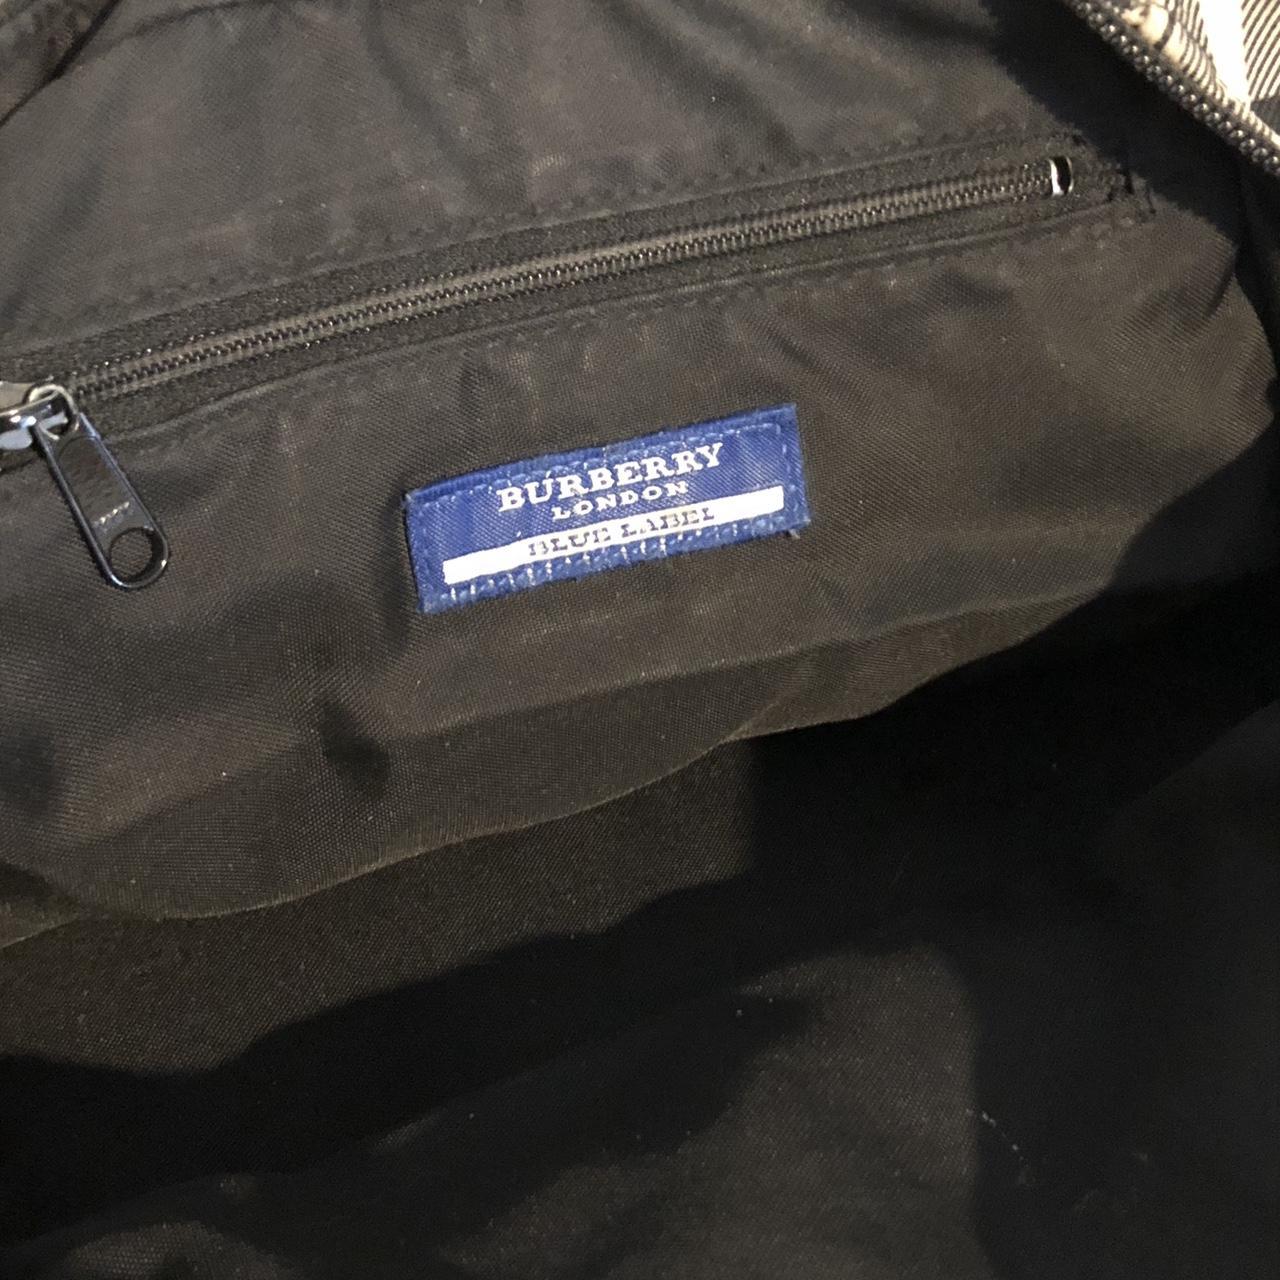 Vintage Burberry Blue Label London tote bag handbag.... - Depop